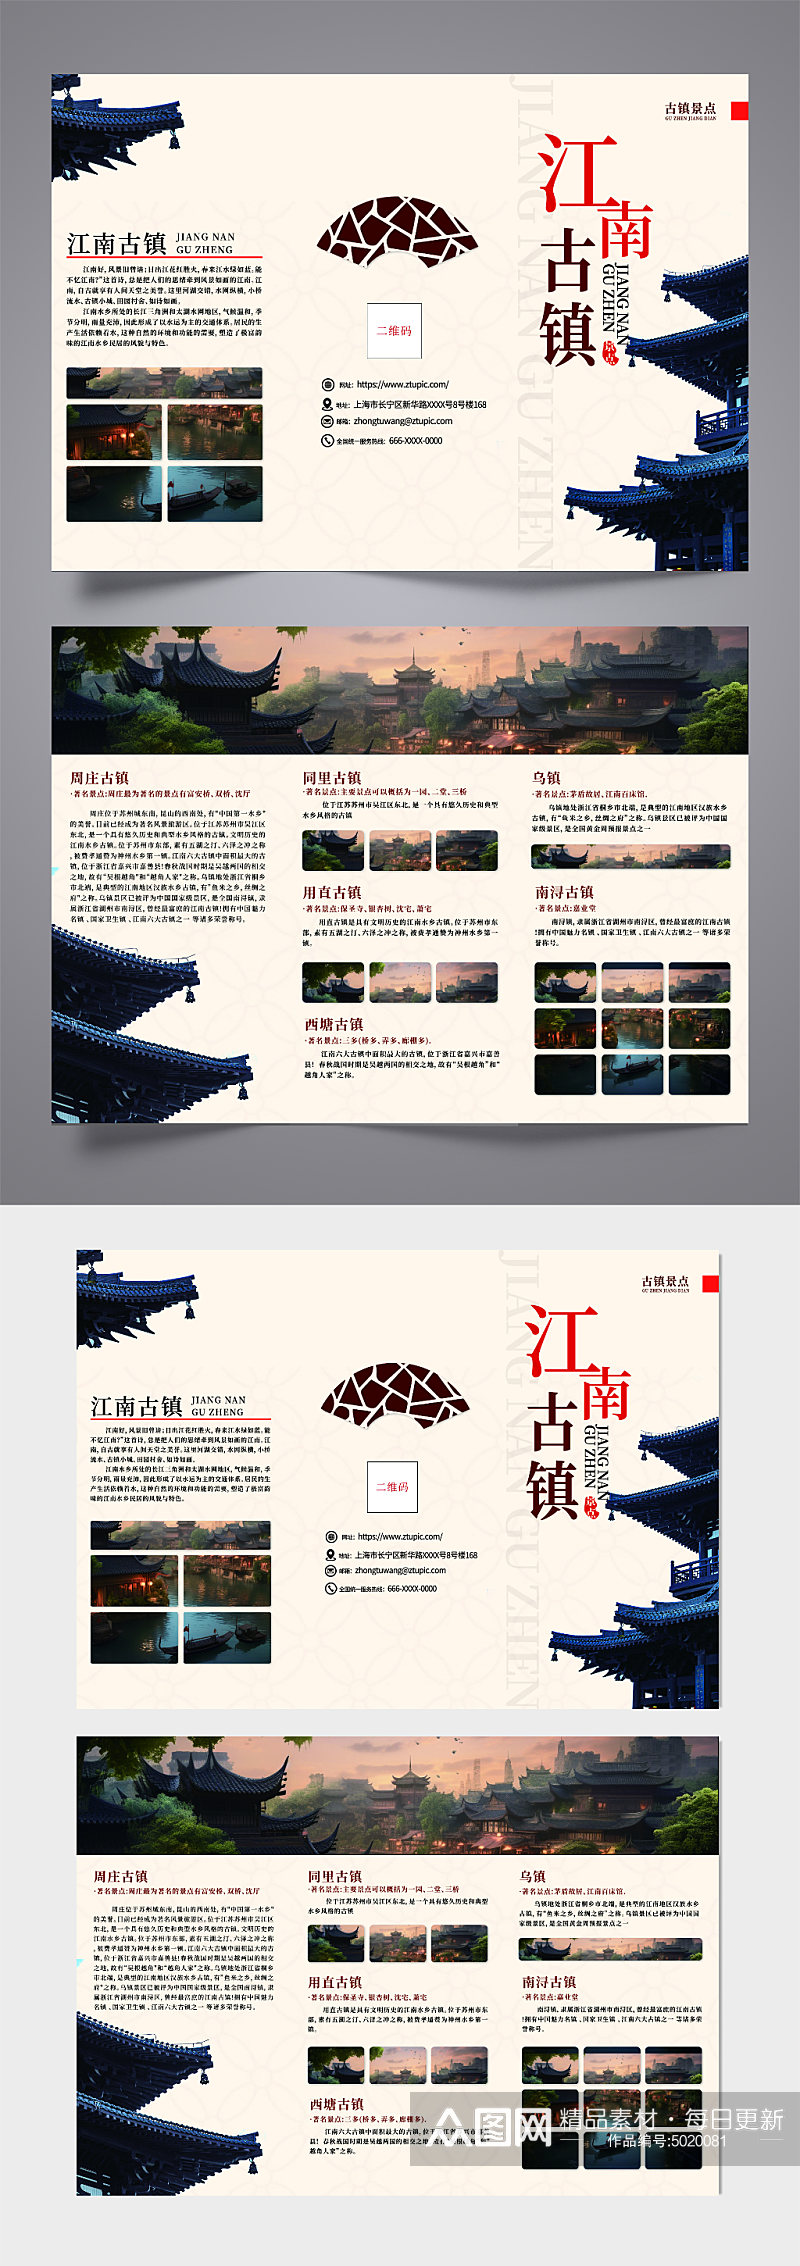 江南古镇古建筑古镇文化旅游宣传三折页素材